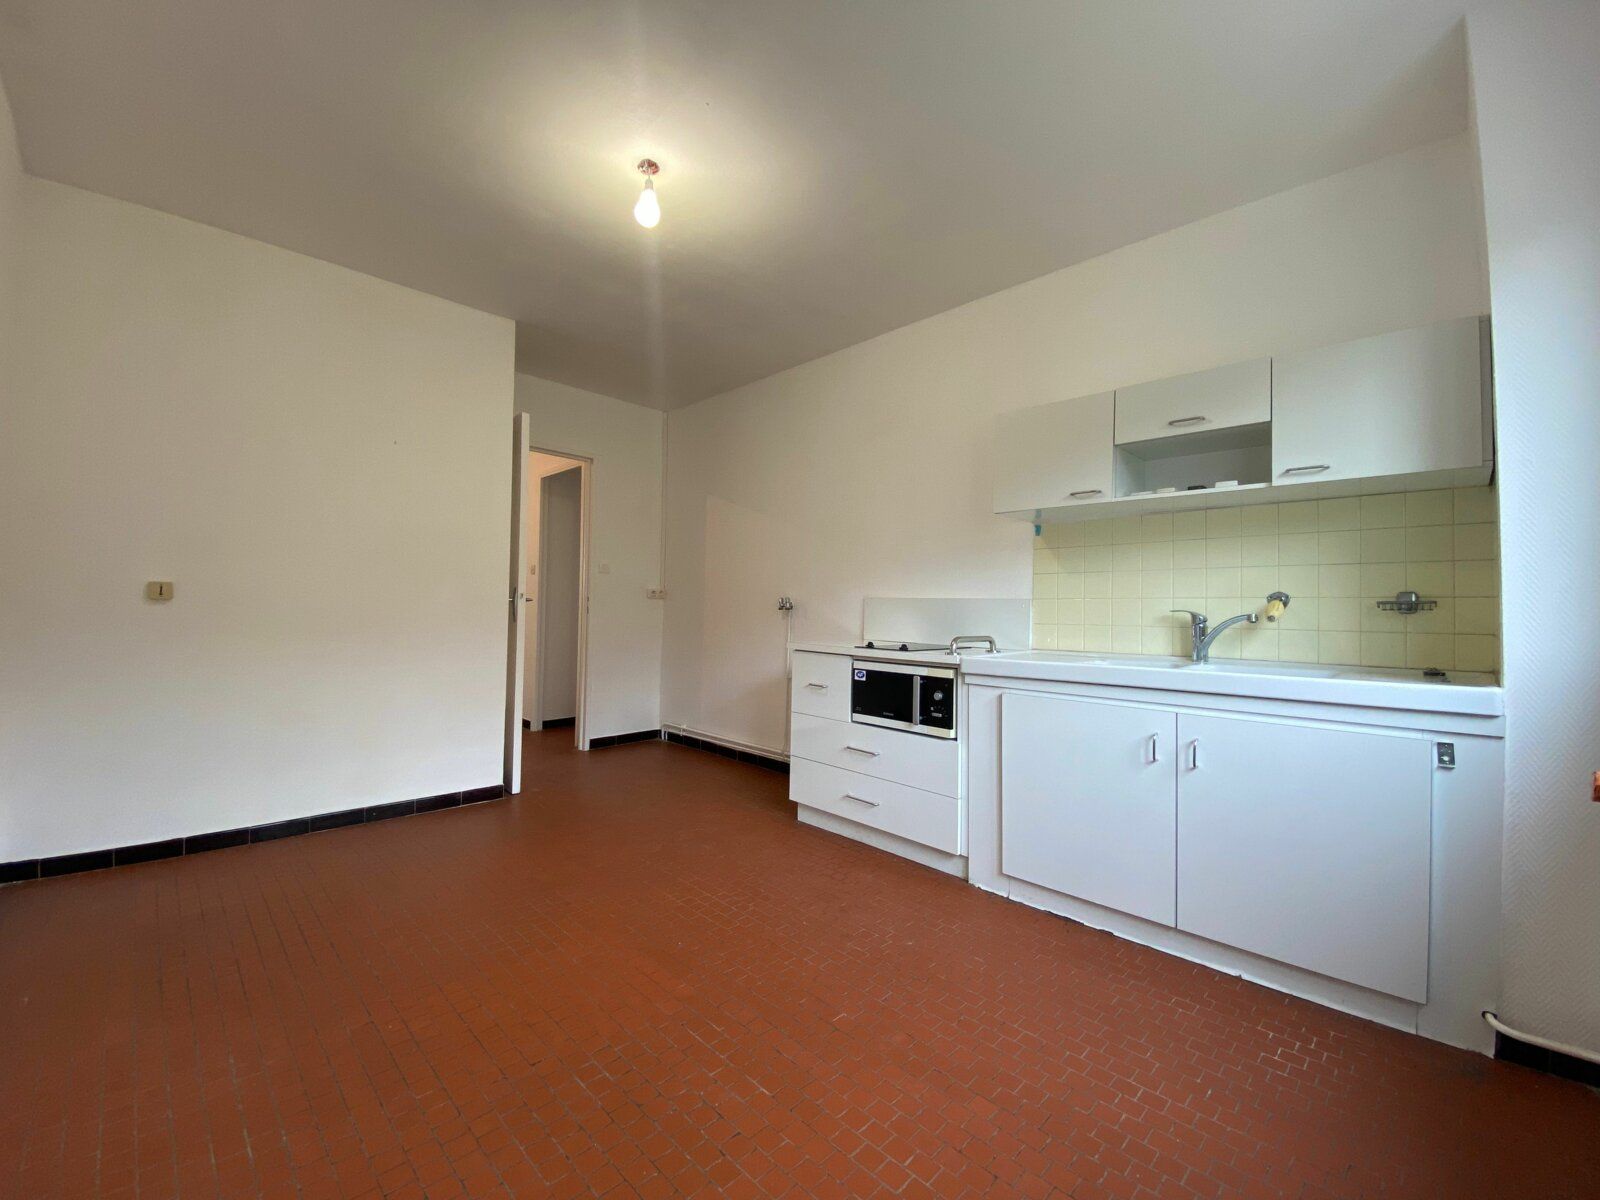 Appartement à vendre 3 68.8m2 à Fontaines-sur-Saône vignette-8